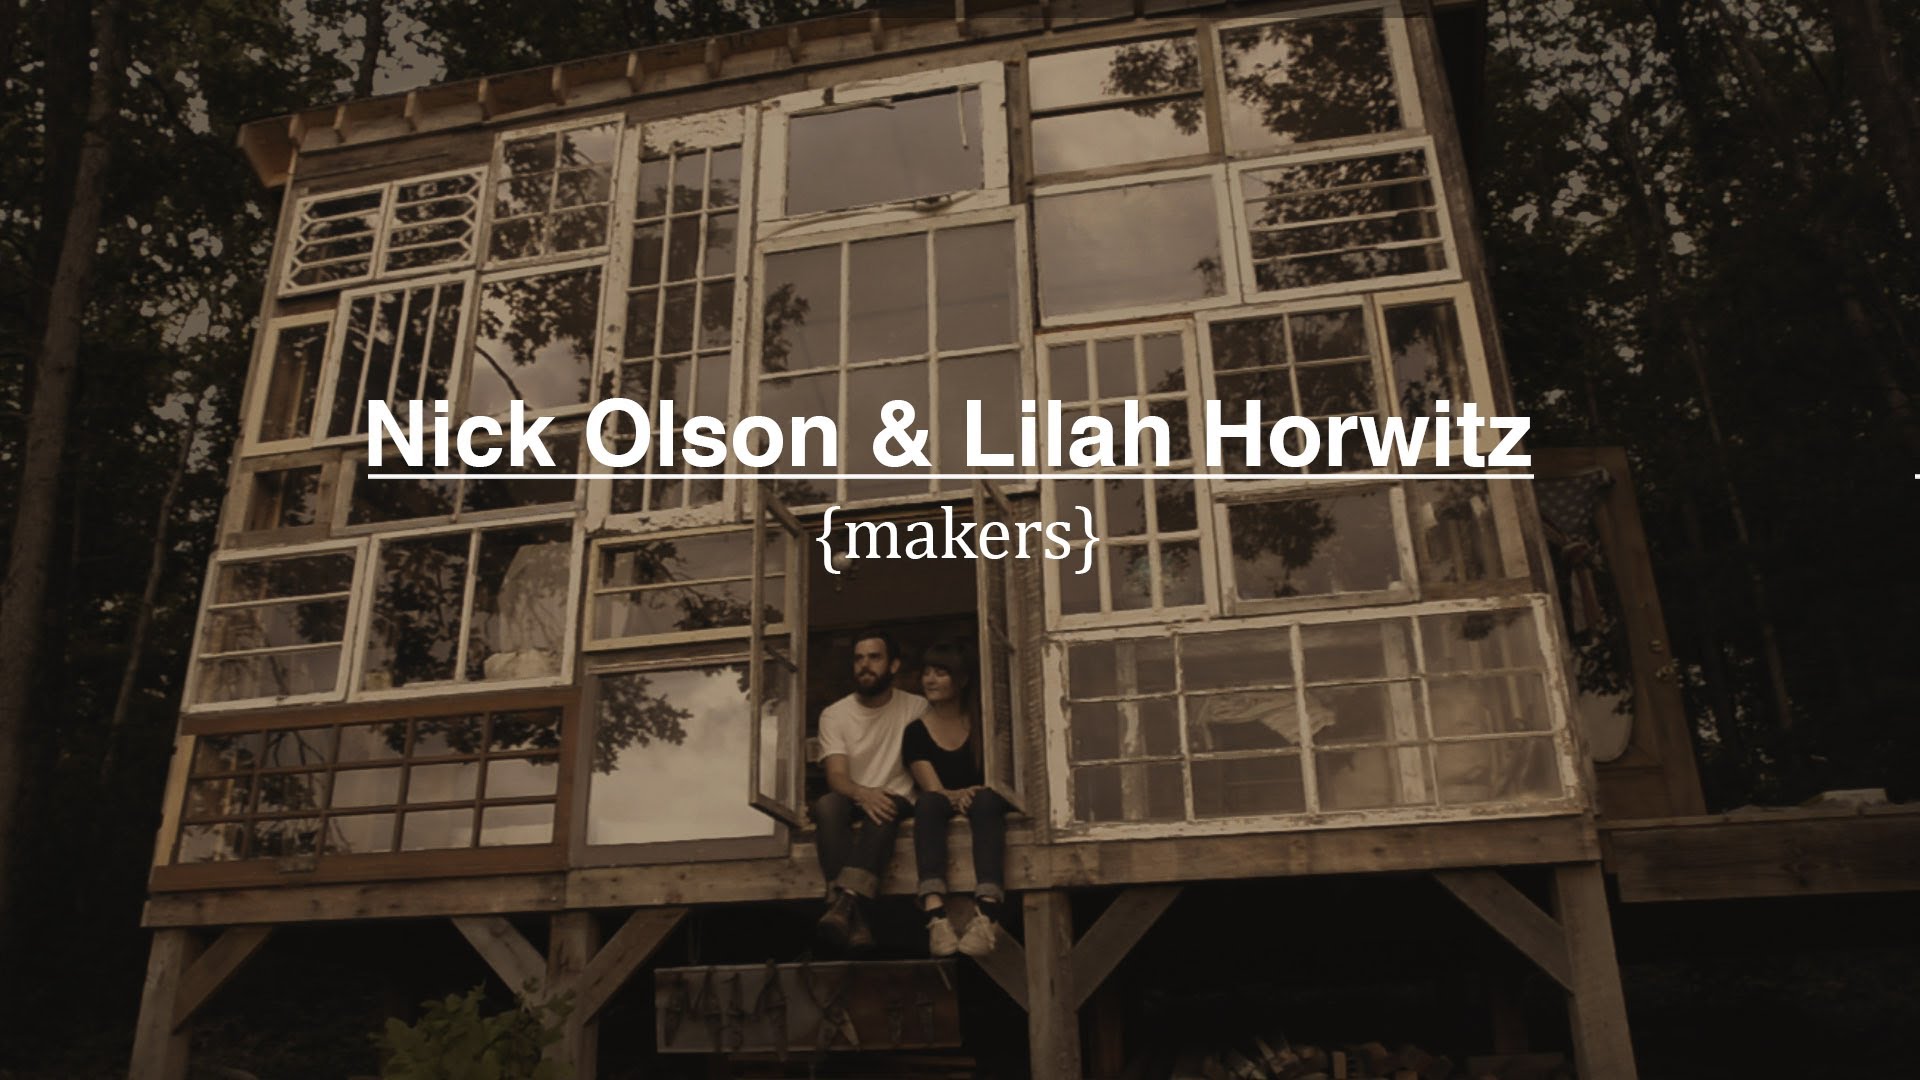 닉 올슨 & 릴라 호르위츠, Makers, 2012, 다큐멘터리, 7분25초.jpg